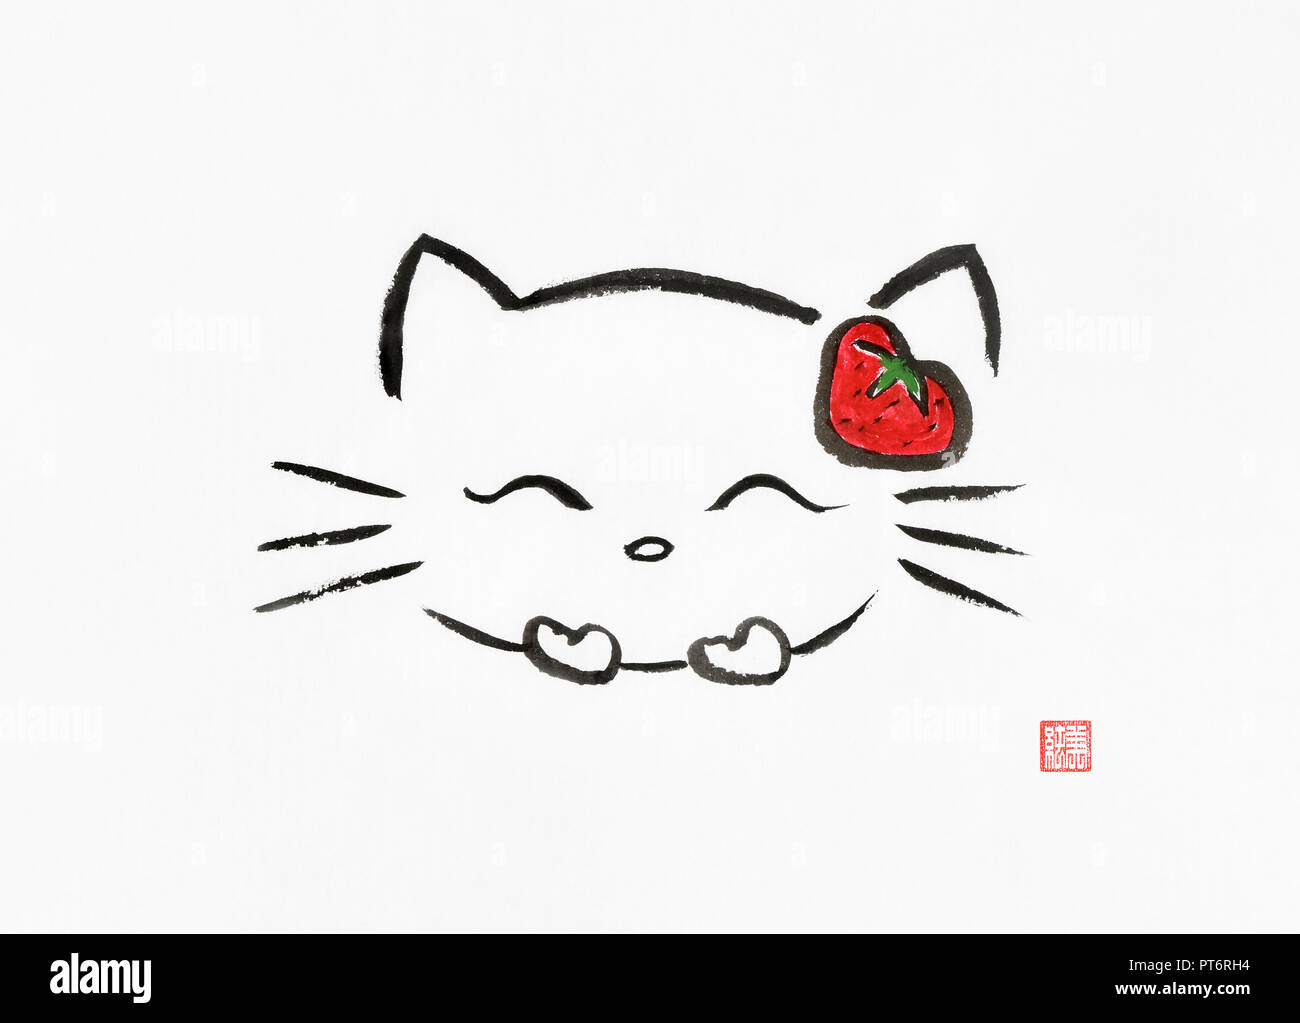 Hello Kitty cuchicheando kawaii Cute dibujos animados usando una fresa roja. Artística ilustración de estilo oriental, el zen japonés Sumi-e pintura en tinta Foto de stock